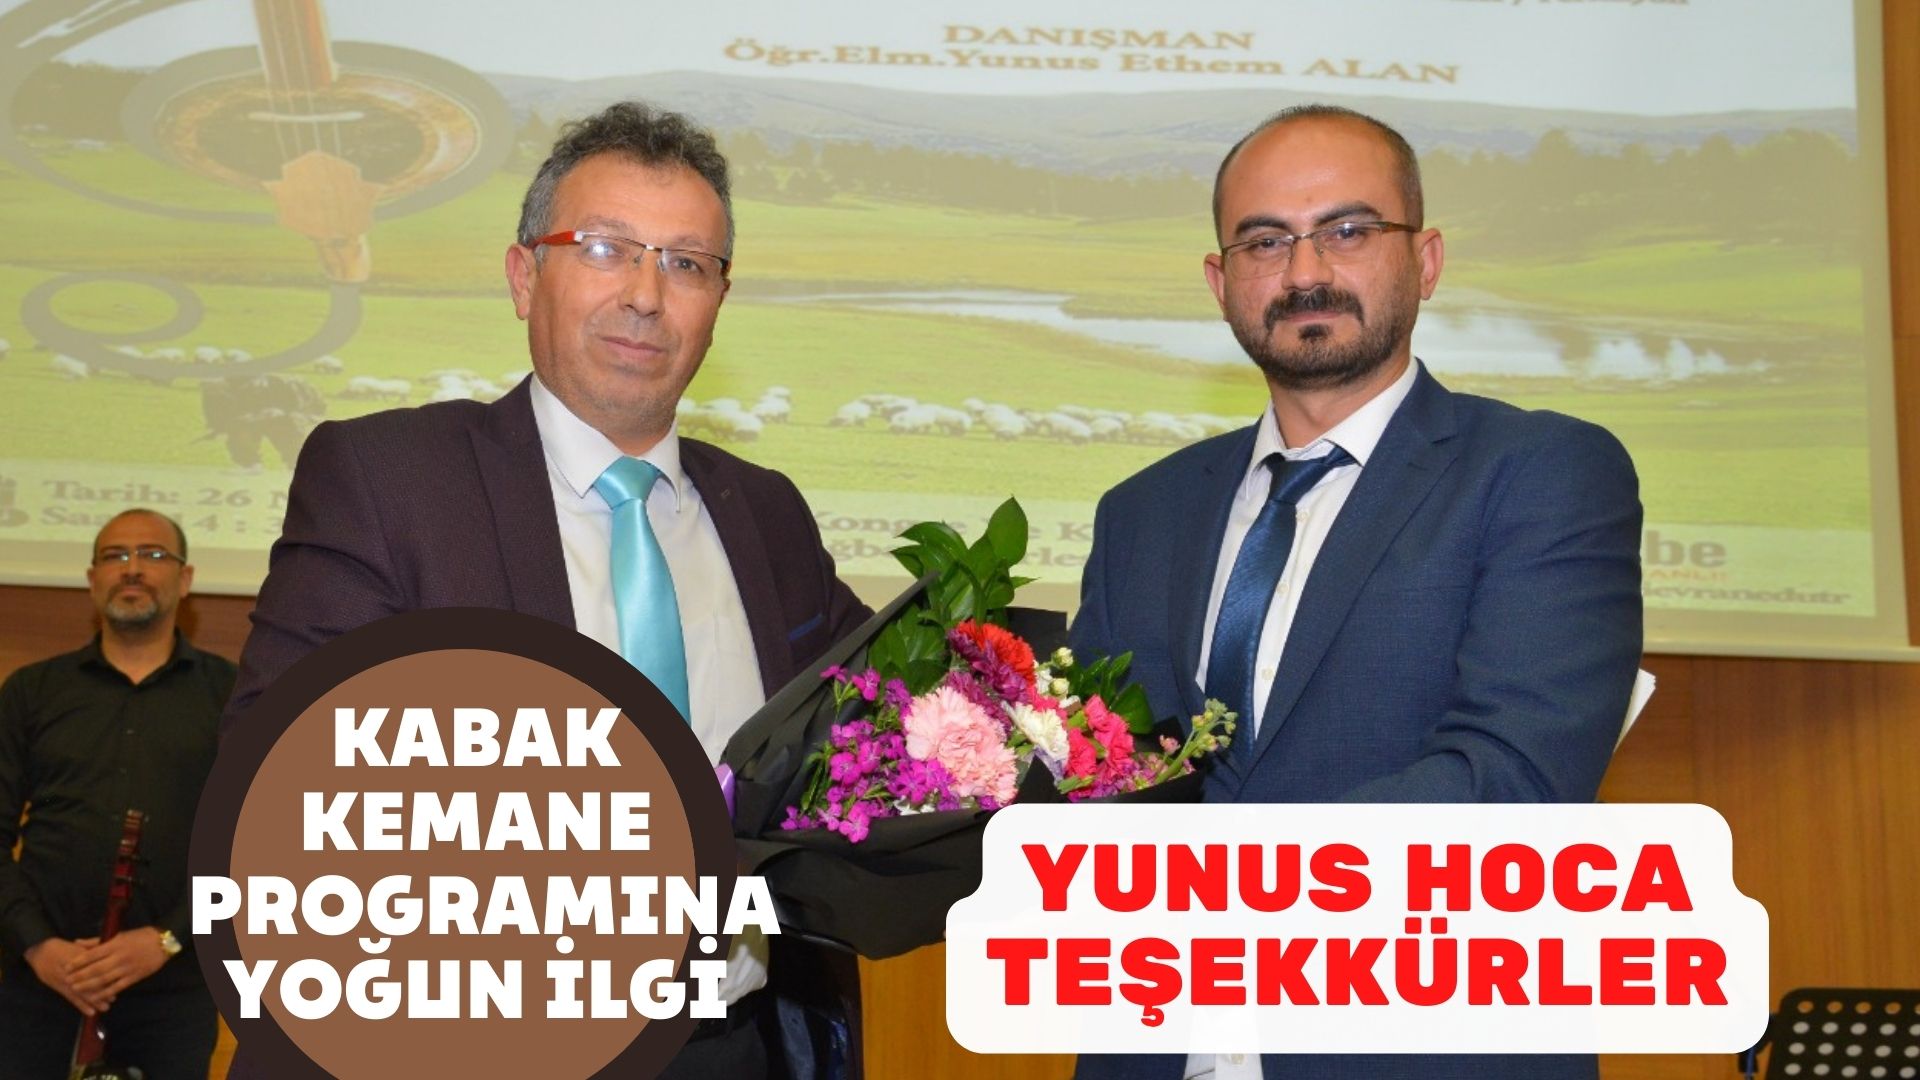 Kırşehir’de ilk olan Kabak Kemane programına ilgi yüksekti